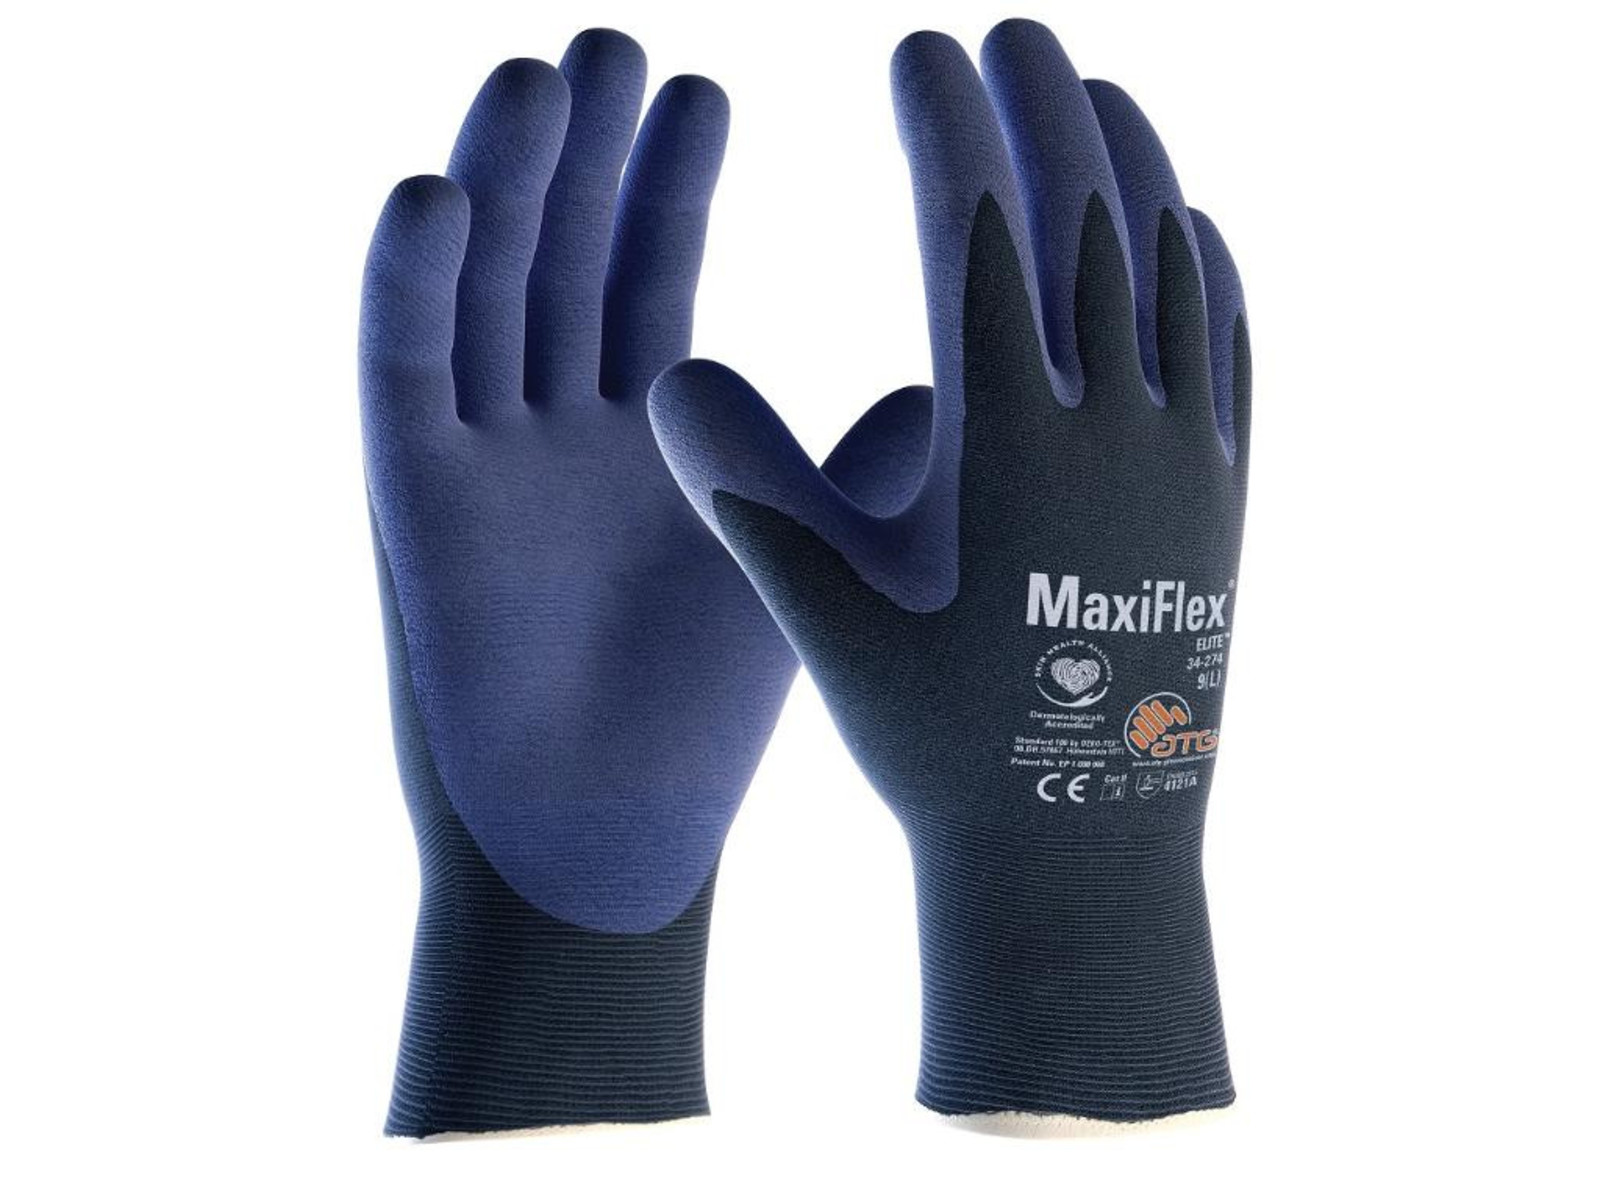 Pracovné rukavice ATG MaxiFlex Elite 34-274 - veľkosť: 10/XL, farba: navy